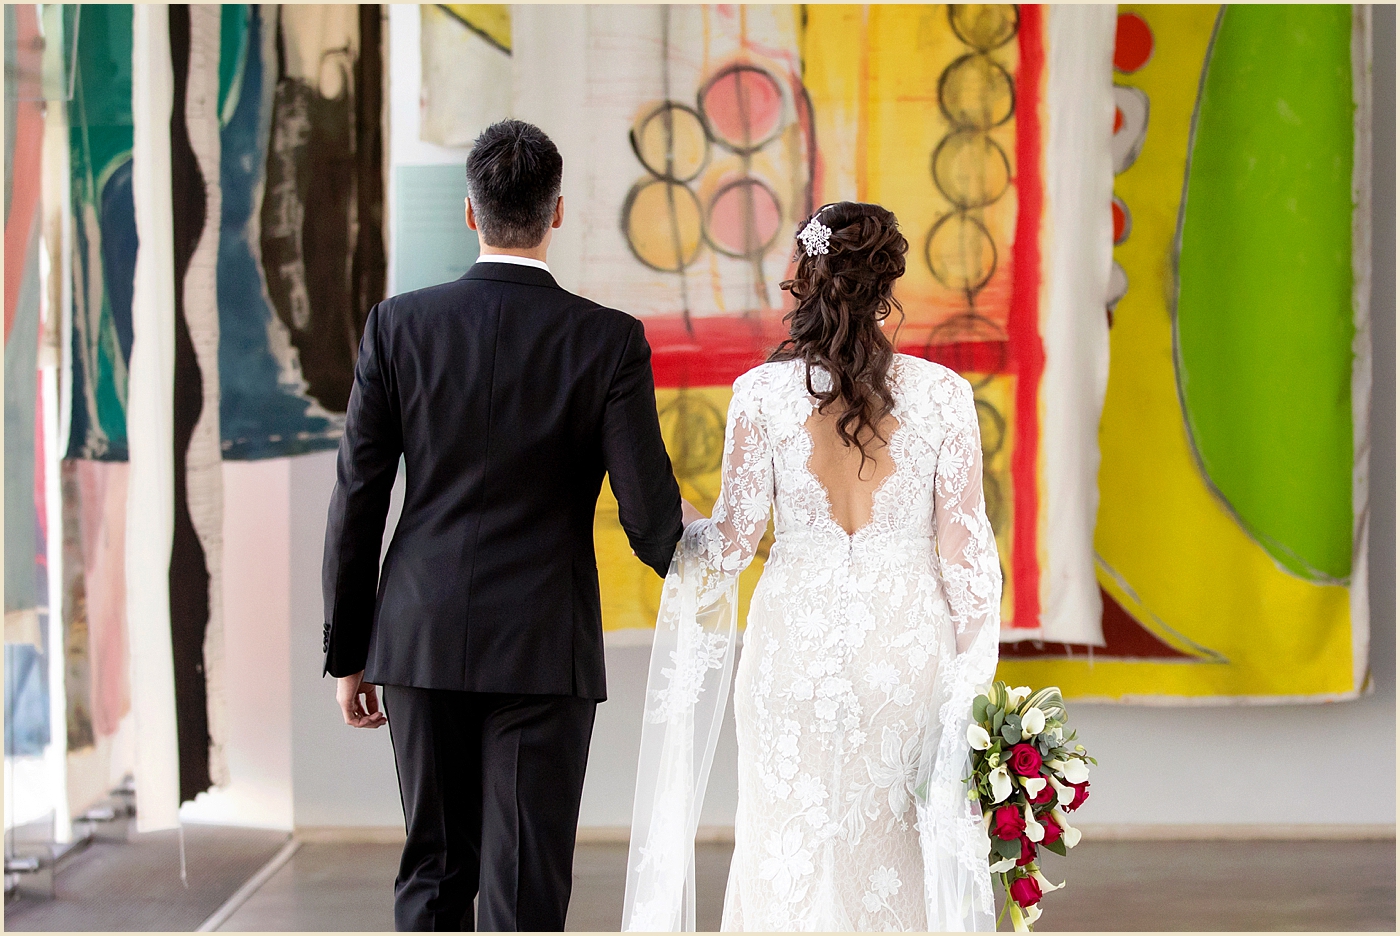 Art Gallery Wedding Venue ICA Boston